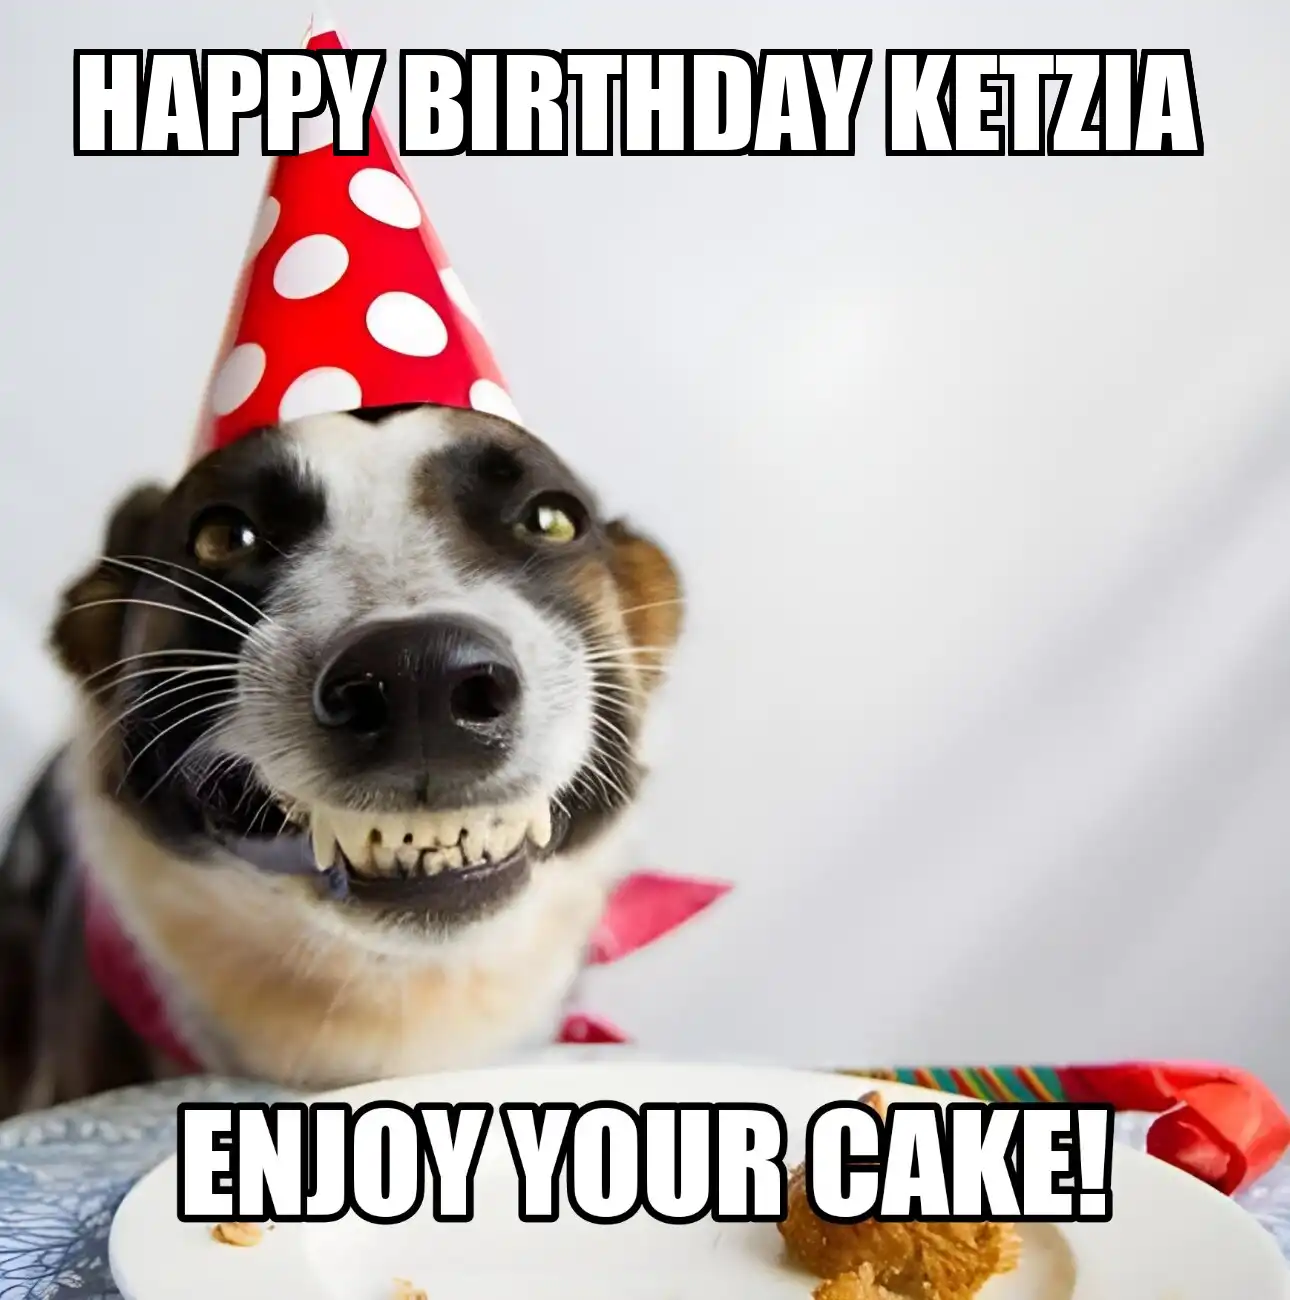 Happy Birthday Ketzia Enjoy Your Cake Dog Meme